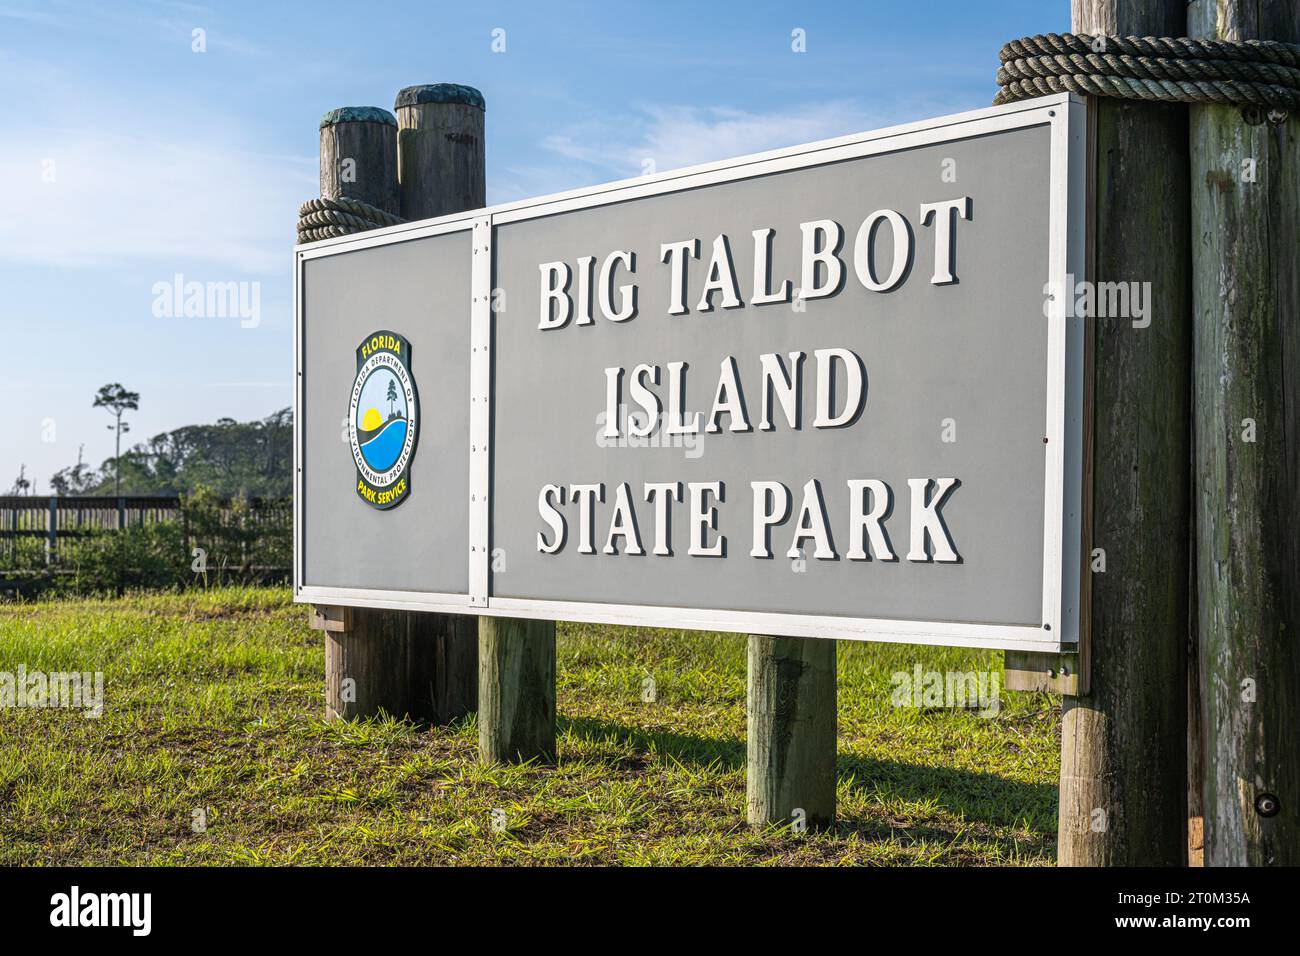 Big Talbot Island State Park, südlich von Amelia Island im Nordosten Floridas. (USA) Stockfoto